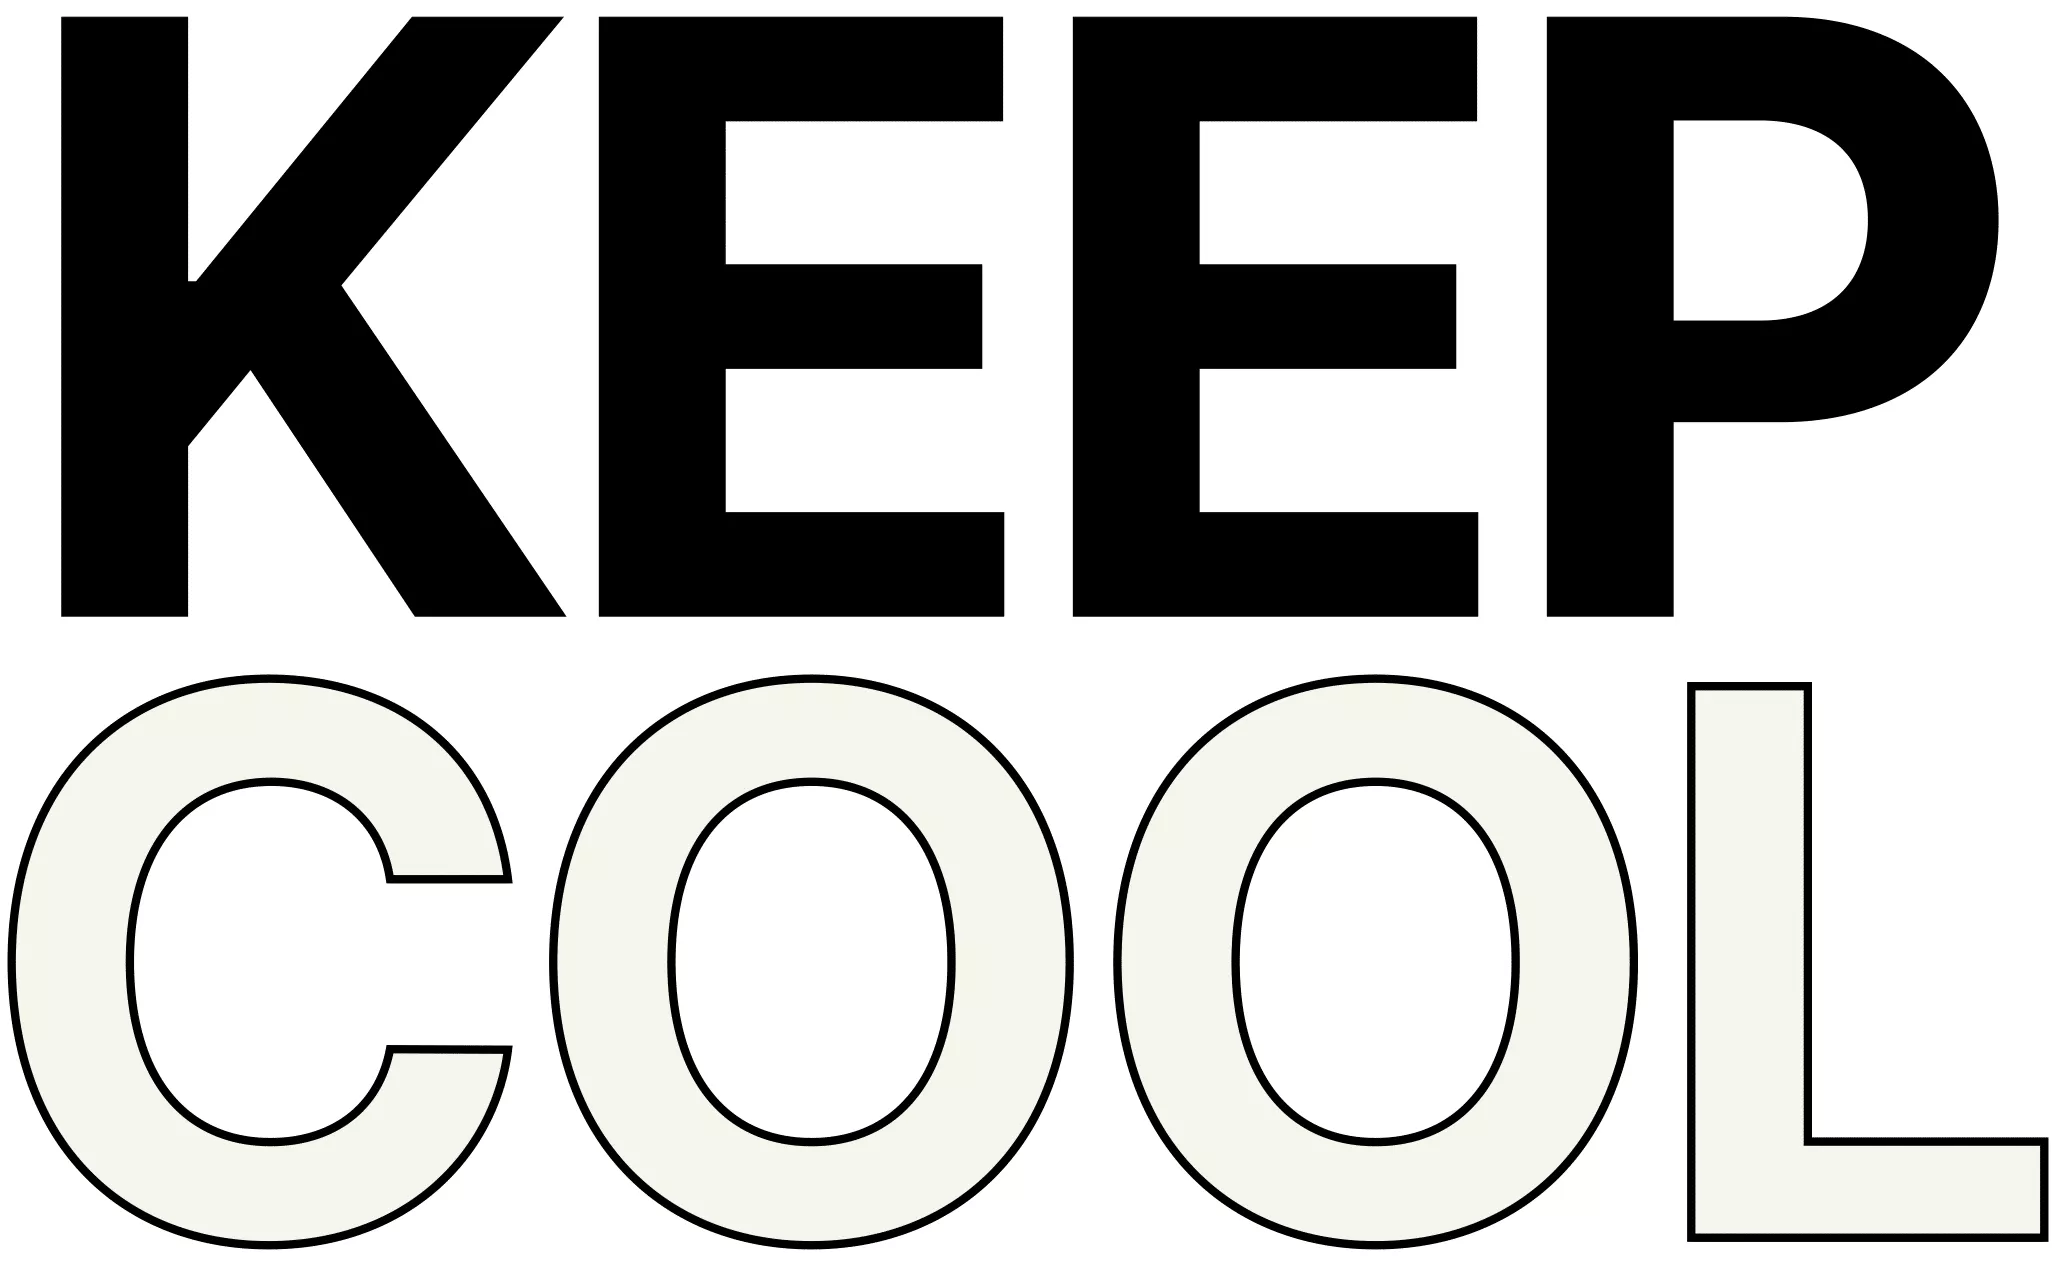 LOGO_KeepCool